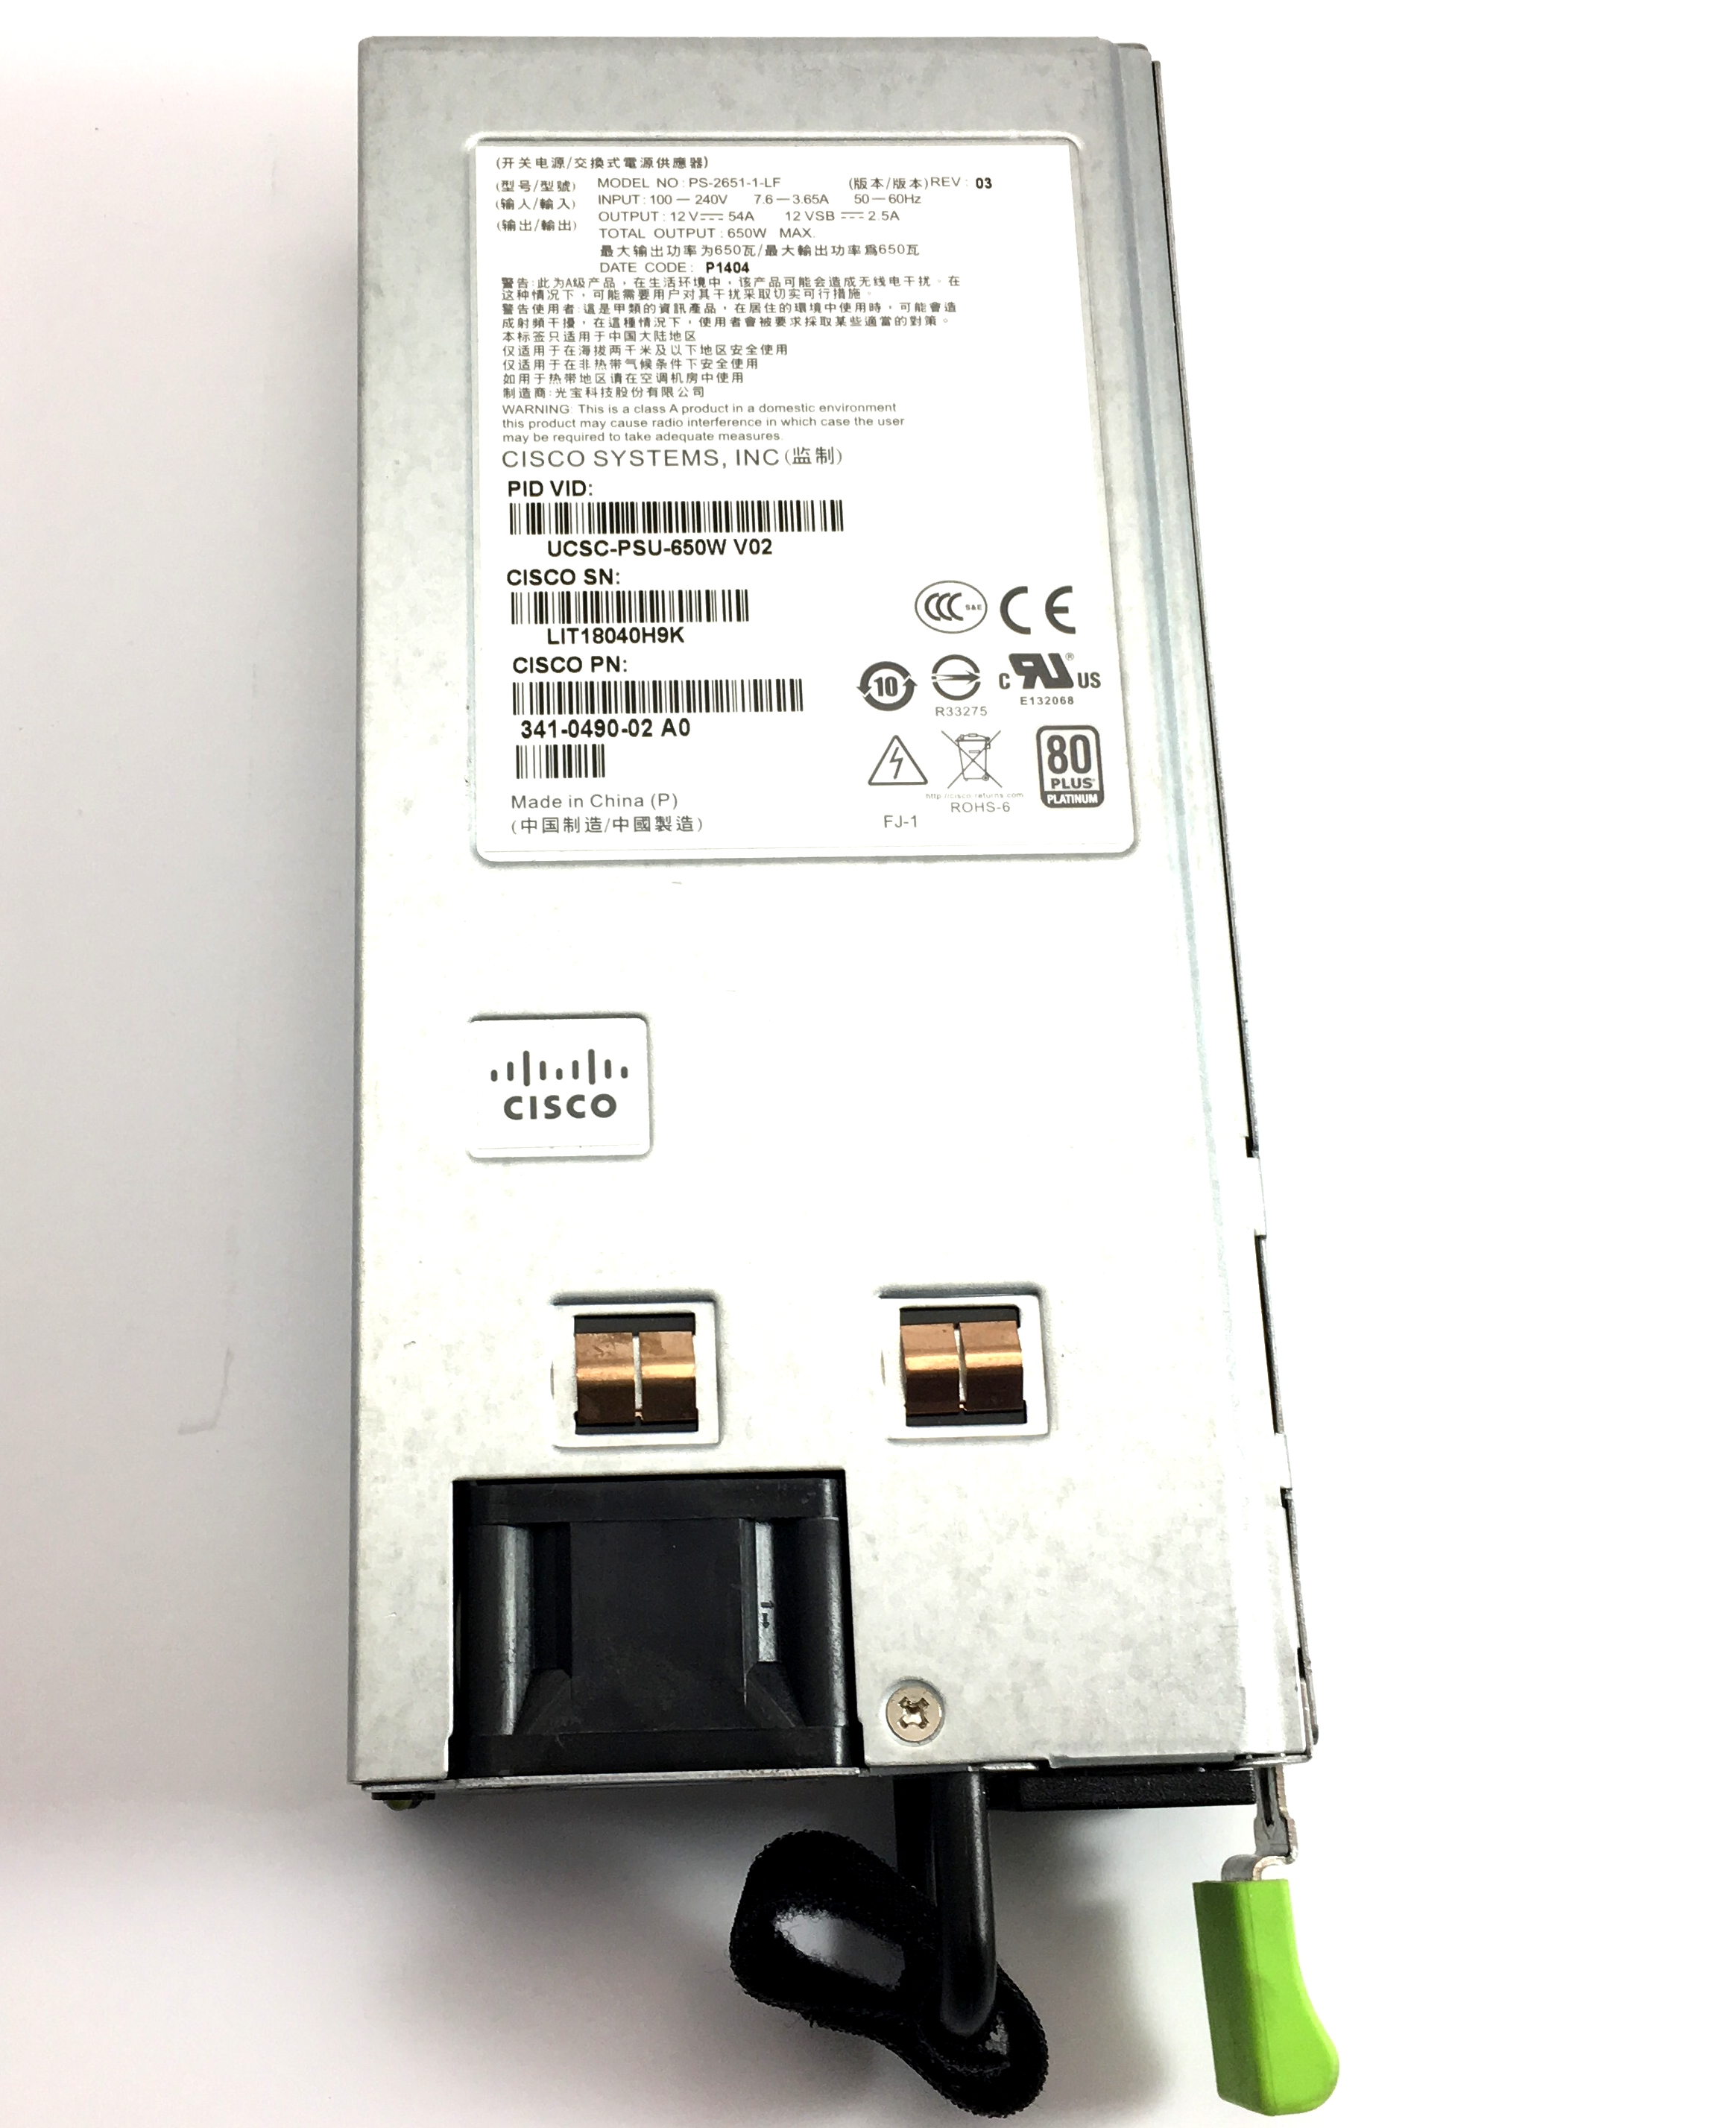 Cisco 650W Power Supply C220 M3 C240 M3 (UCSC-PSU-650W)